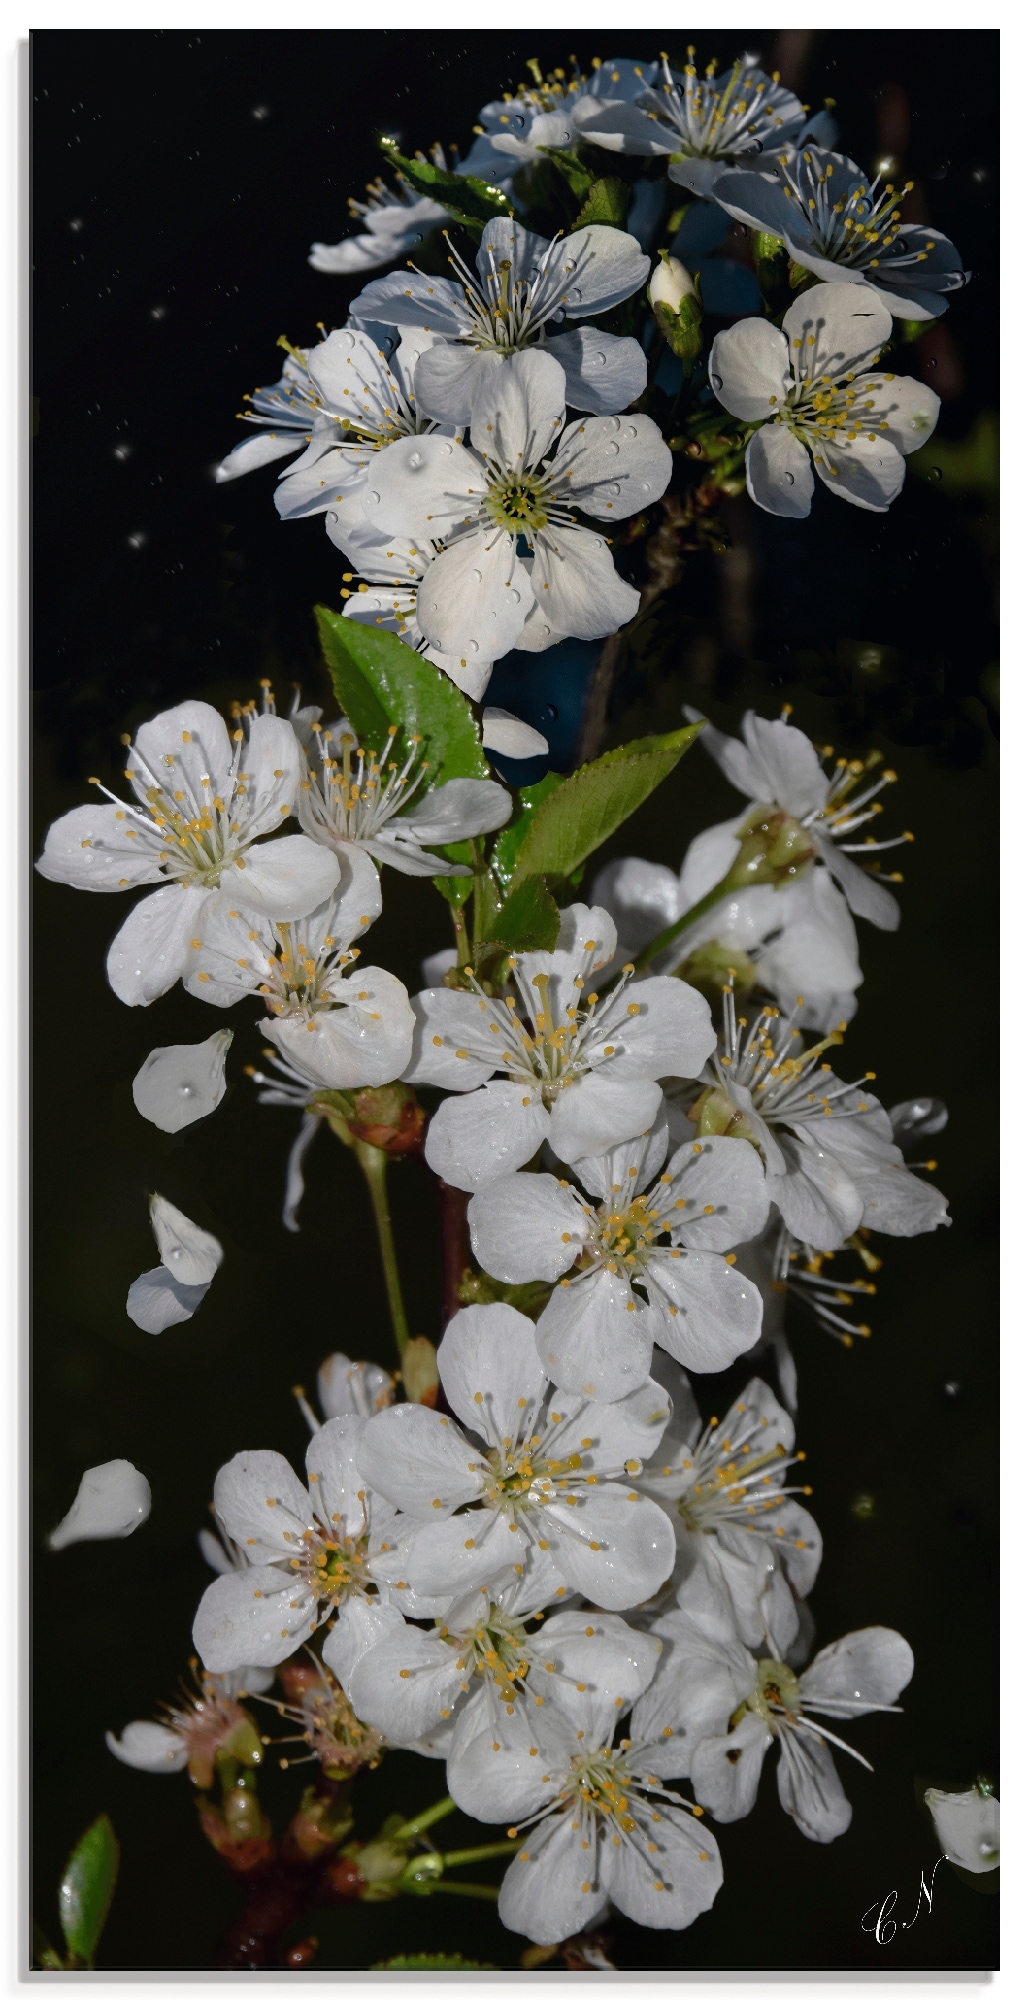 Artland Glasbild »Baumblüte«, Blumen, (1 St.), in verschiedenen Größen